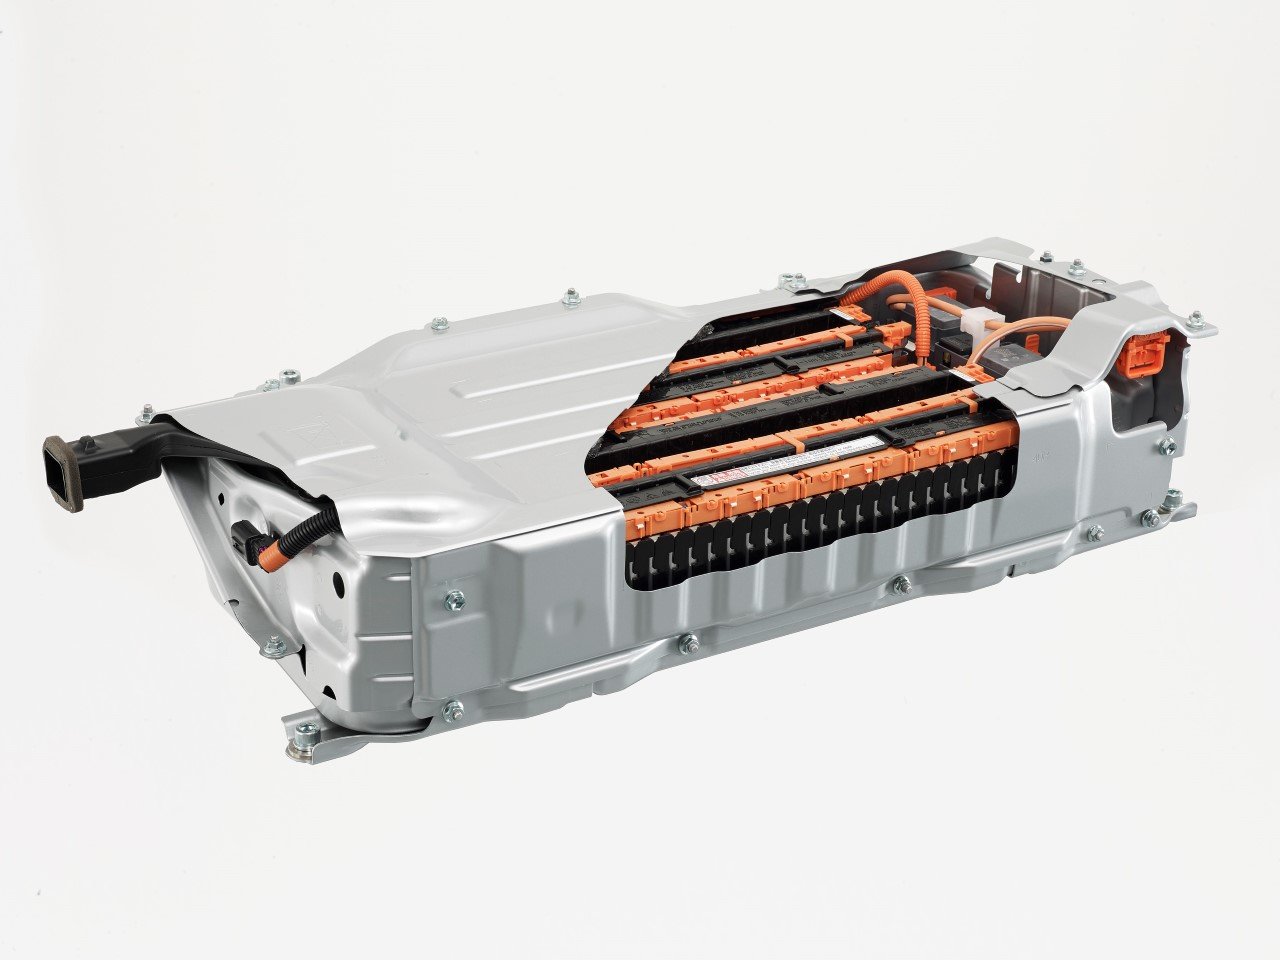 Nový typ trakční baterie hybridního ústrojí využívá lithium-iontovou technologii, výsledkem je nižší hmotnost a rozměry, vyšší kapacita.